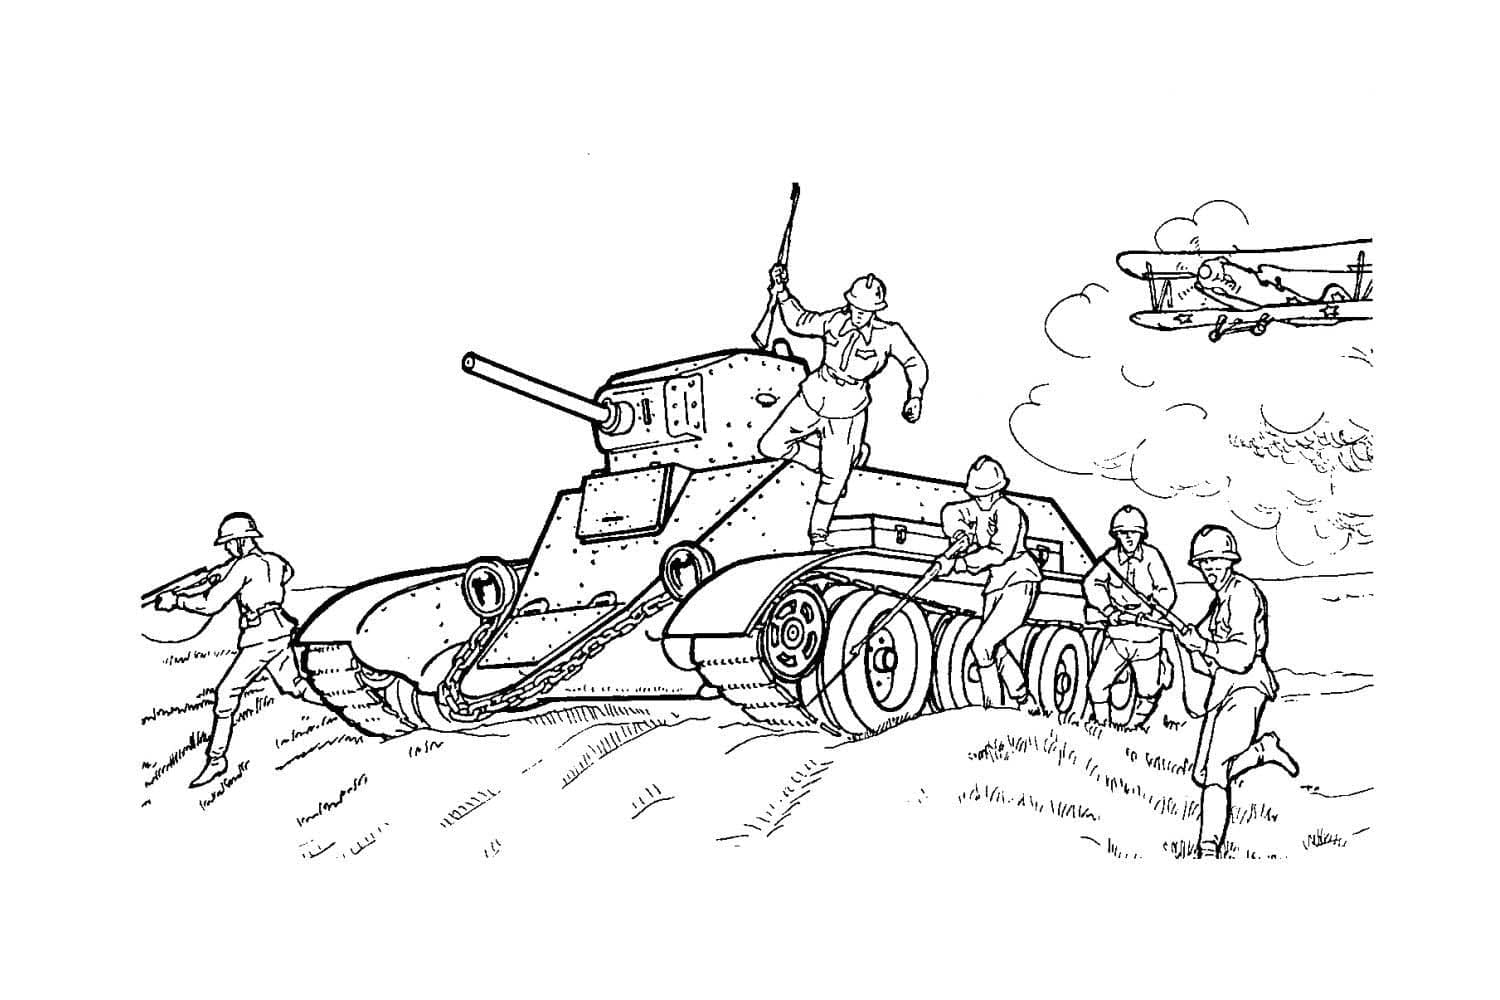 Panzer BT-1